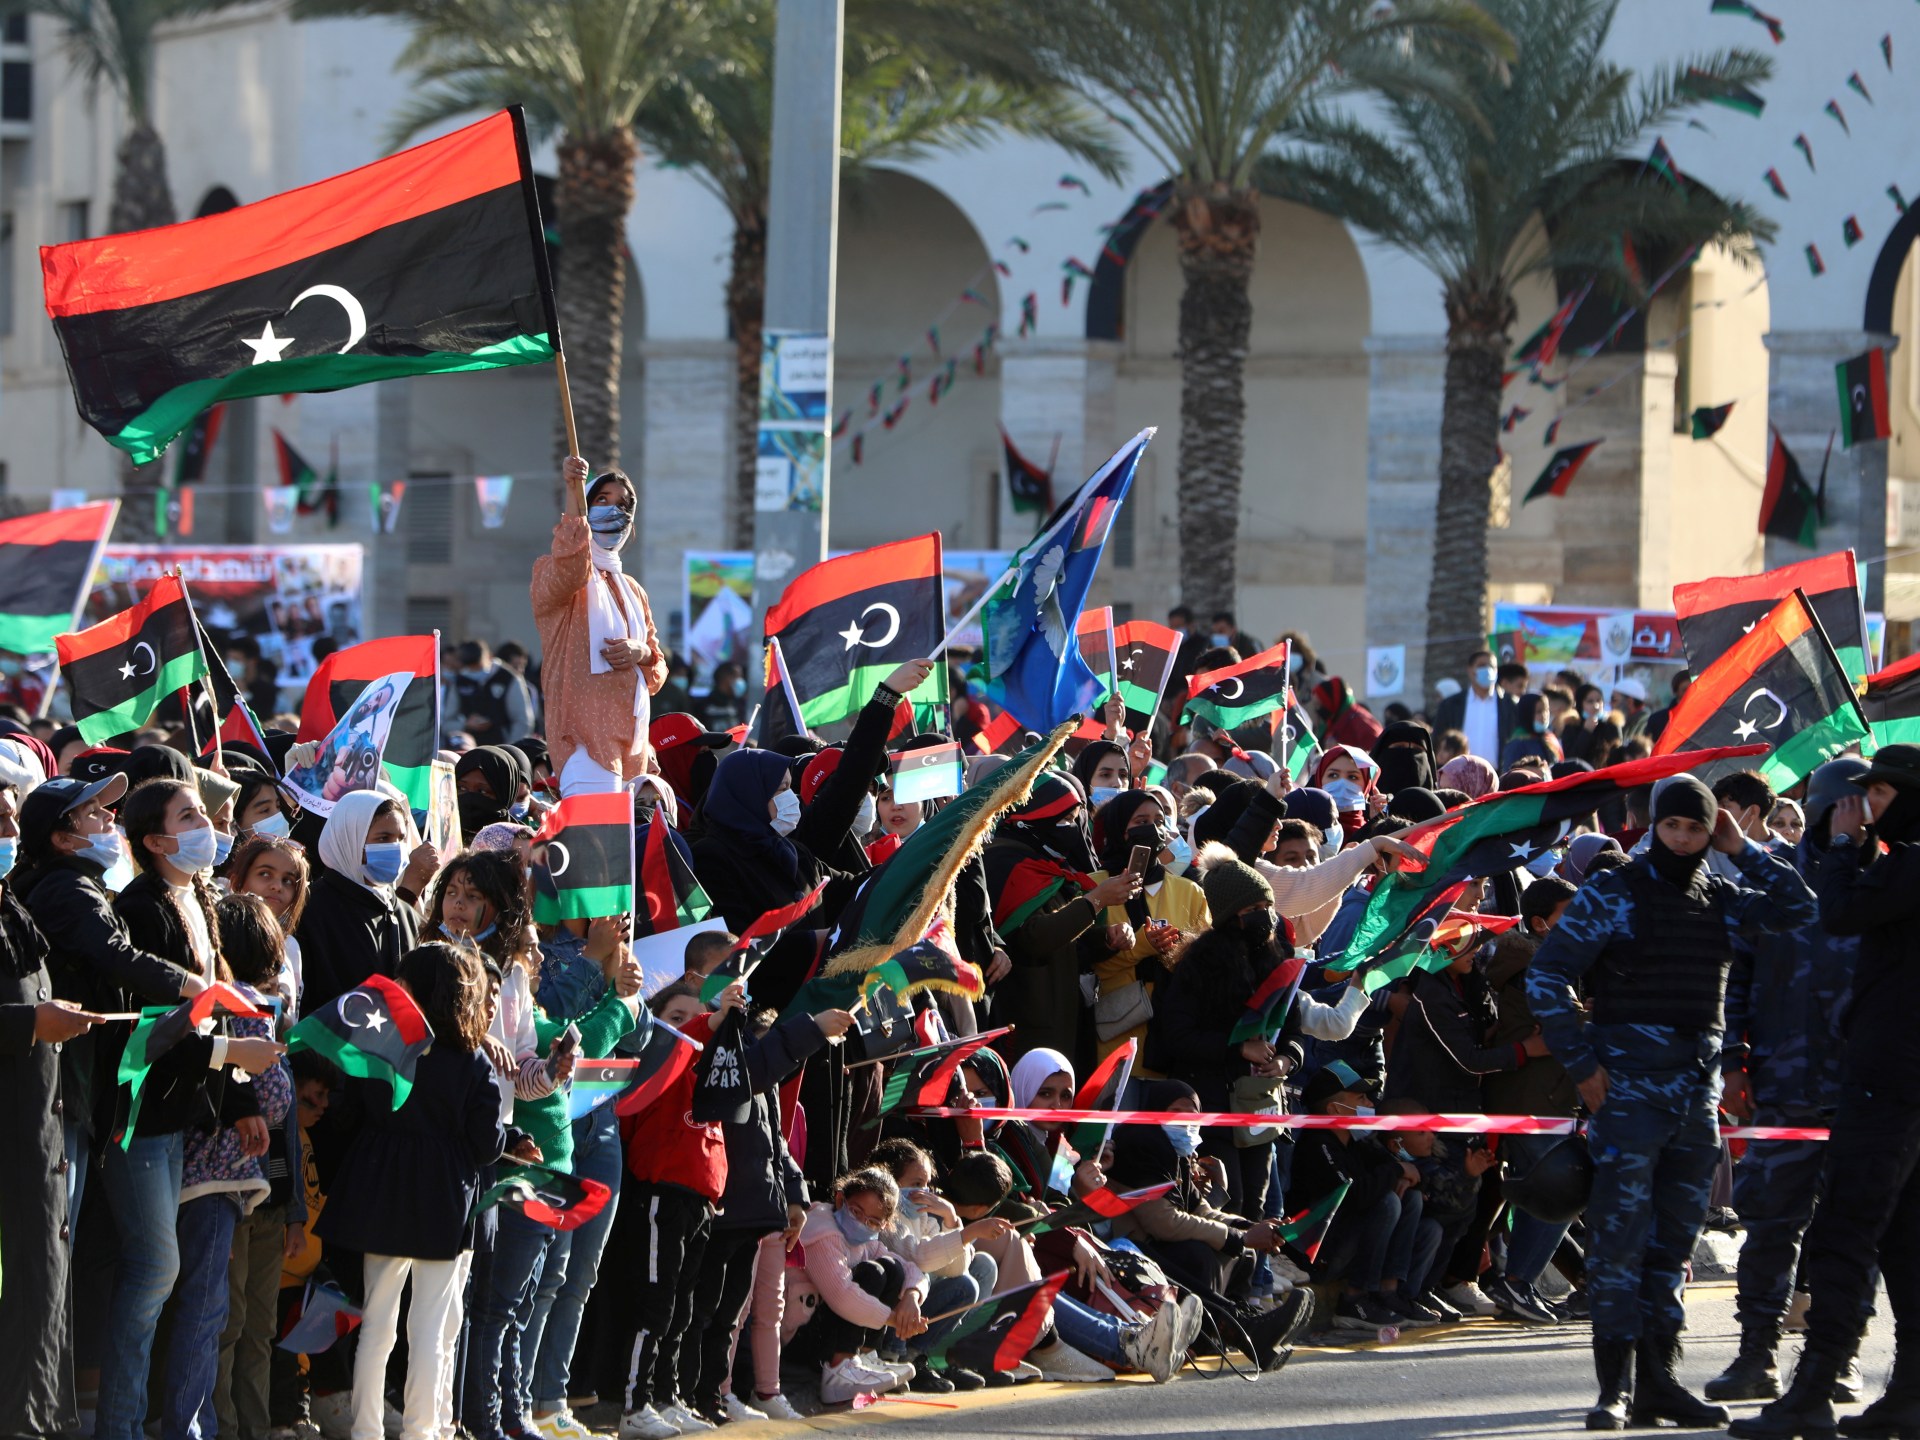 الليبيون يحيون الذكرى الـ13 للثورة وسط دعوات أممية للحوار والوحدة | سياسة – البوكس نيوز